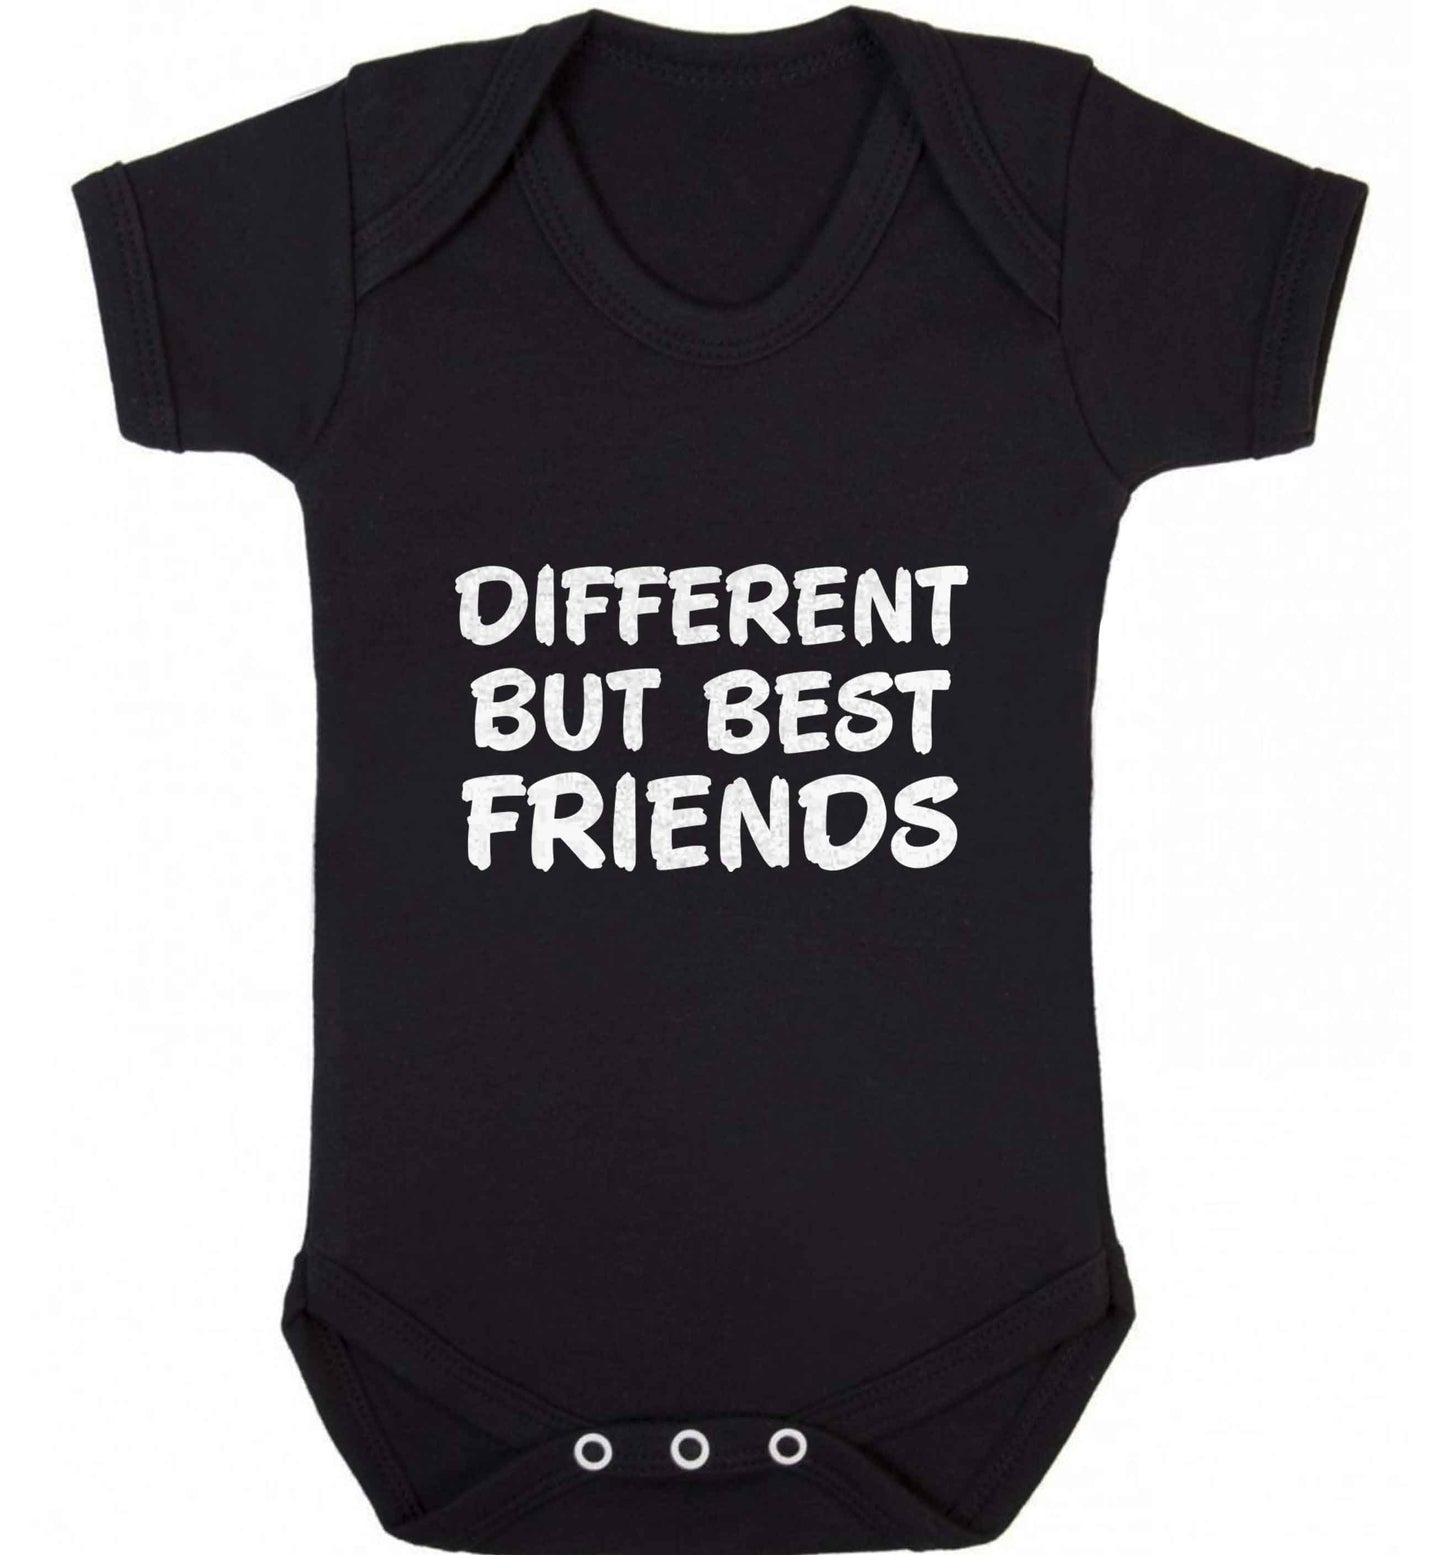 Different but best friends baby vest black 18-24 months